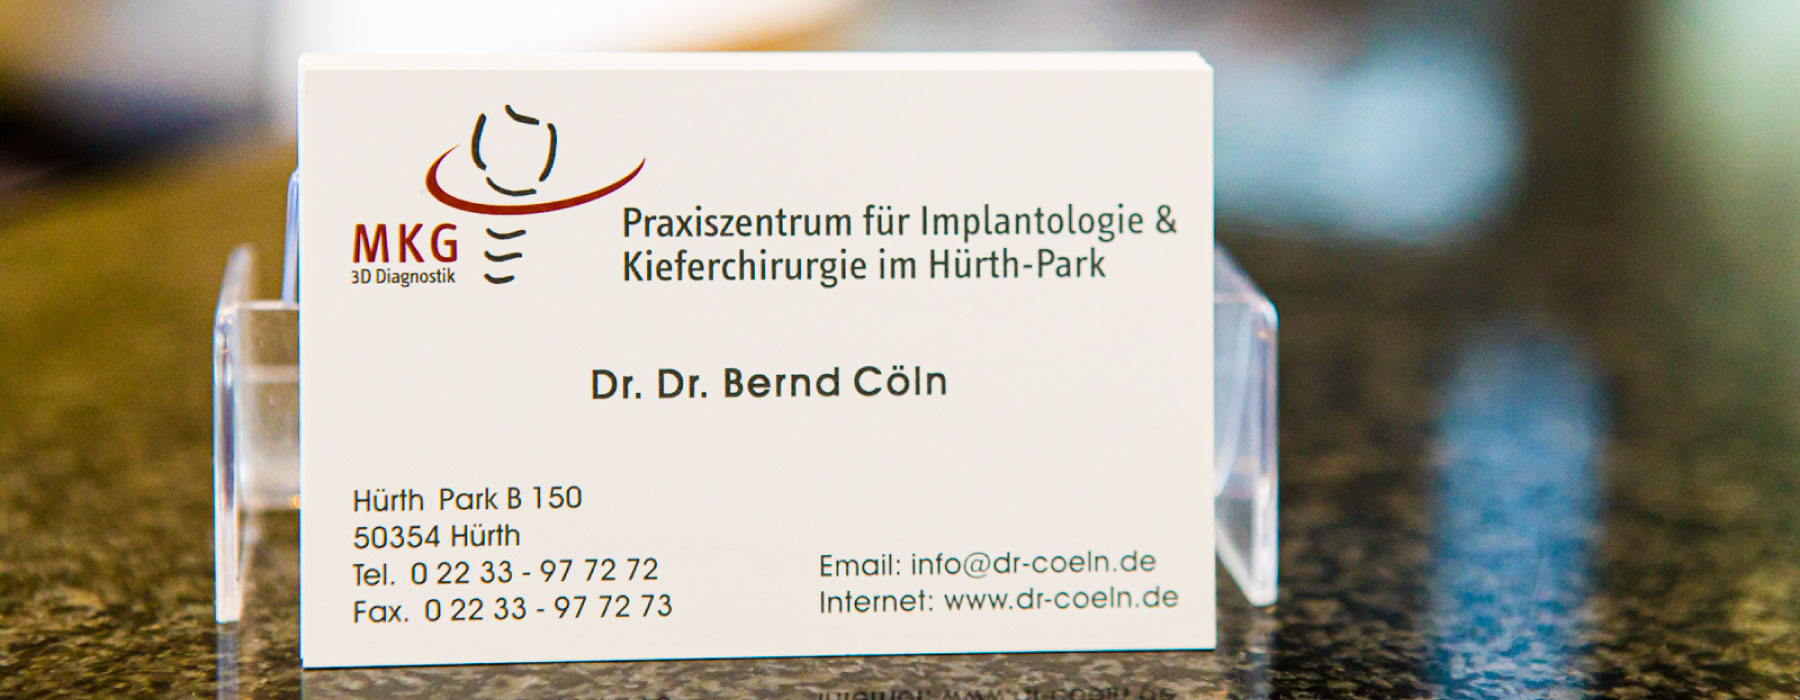 Kontakt Dr. Cöln